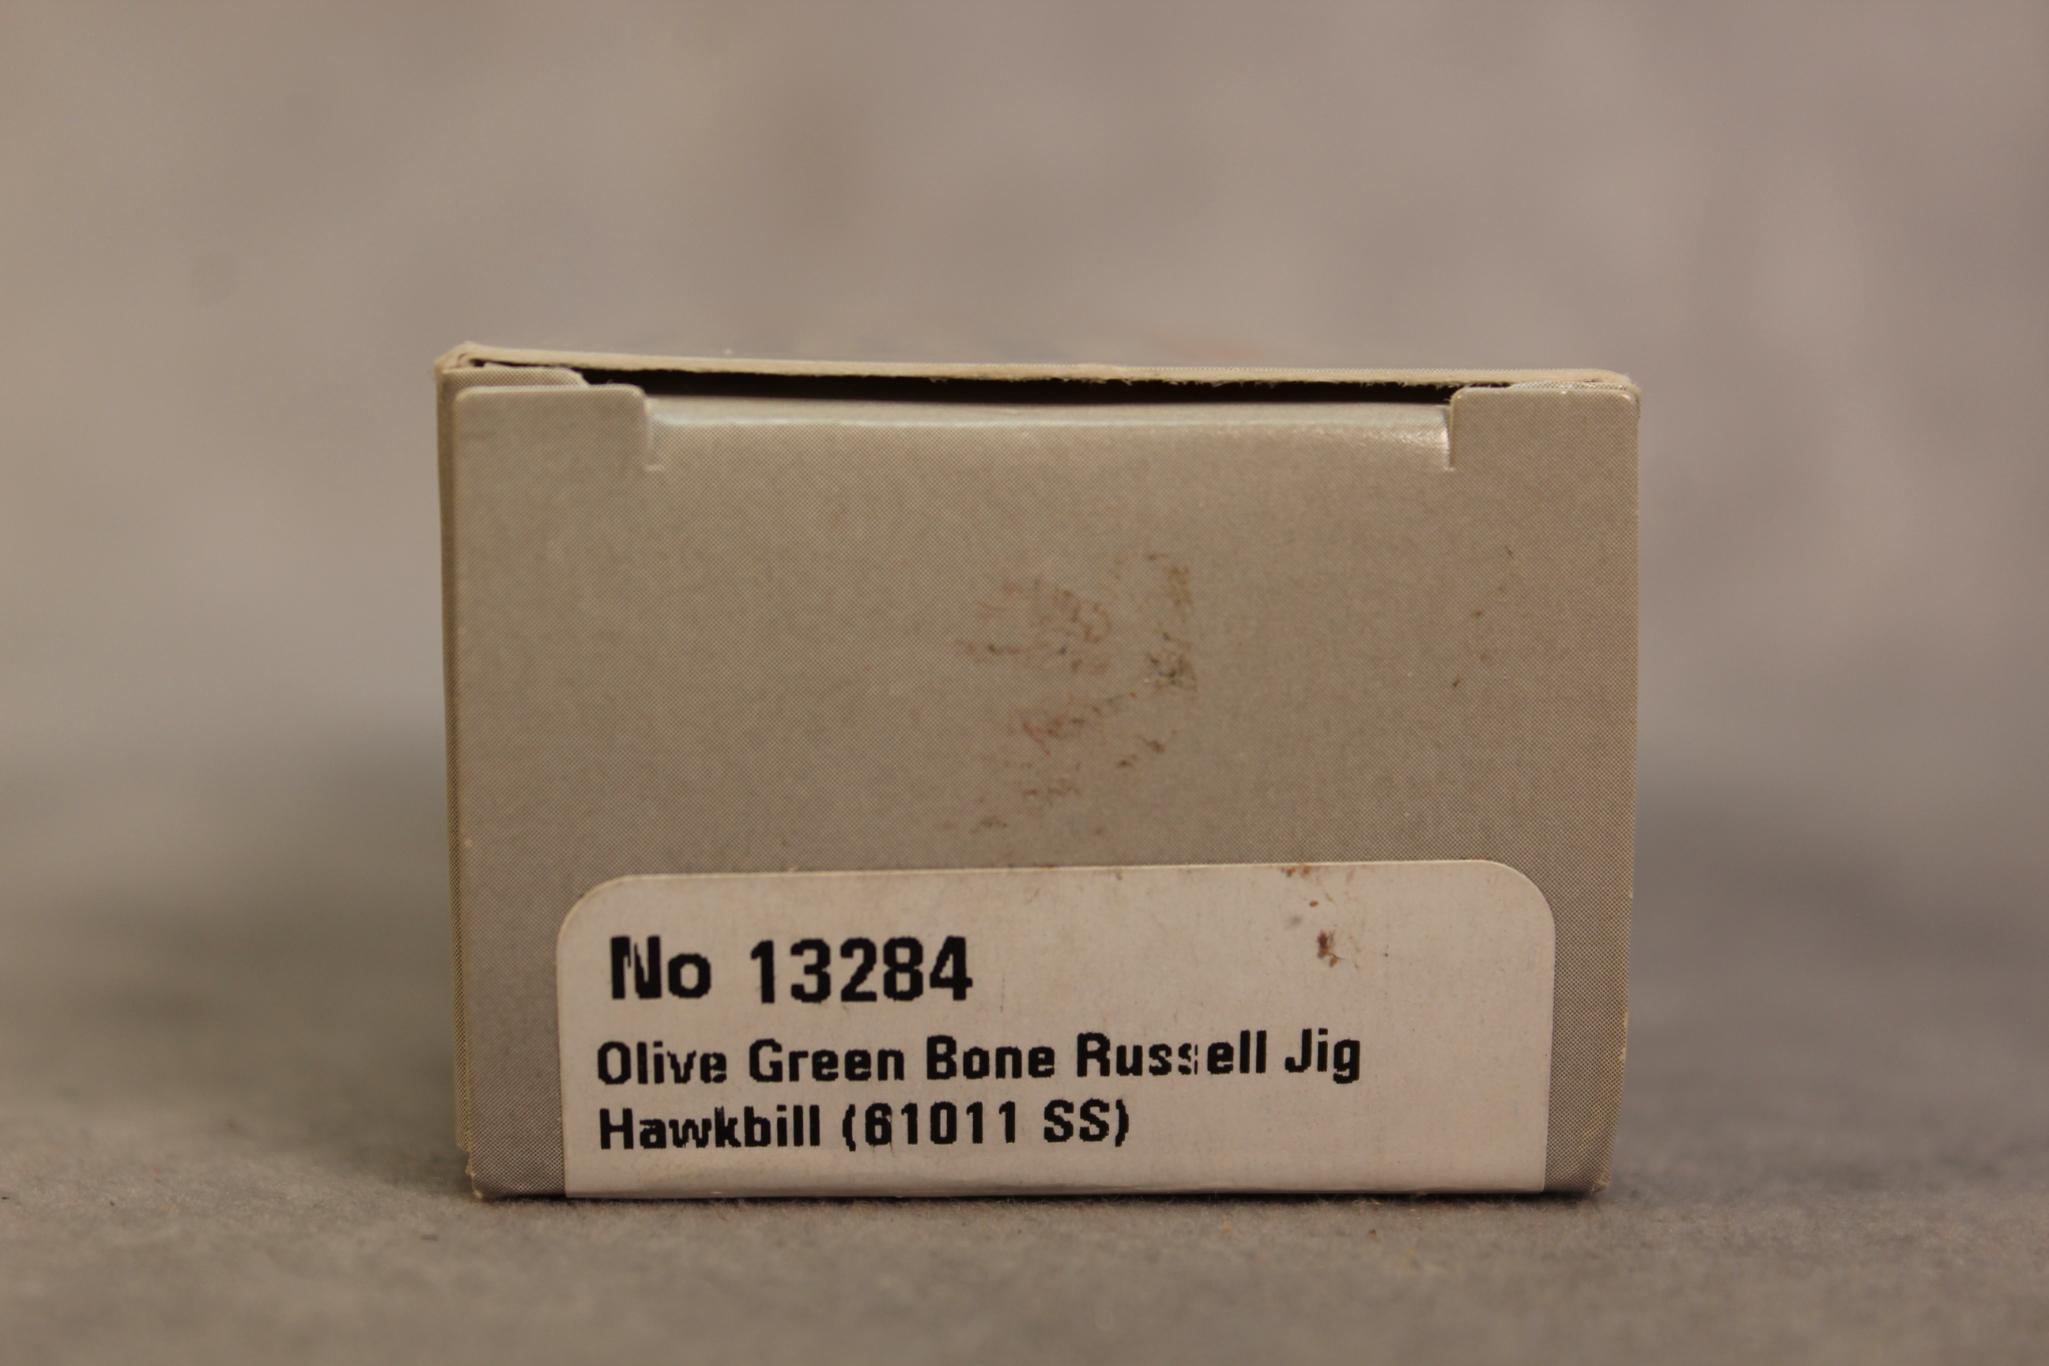 2020 CASE OLIVE GREEN BONE HAWKBILL 61011S